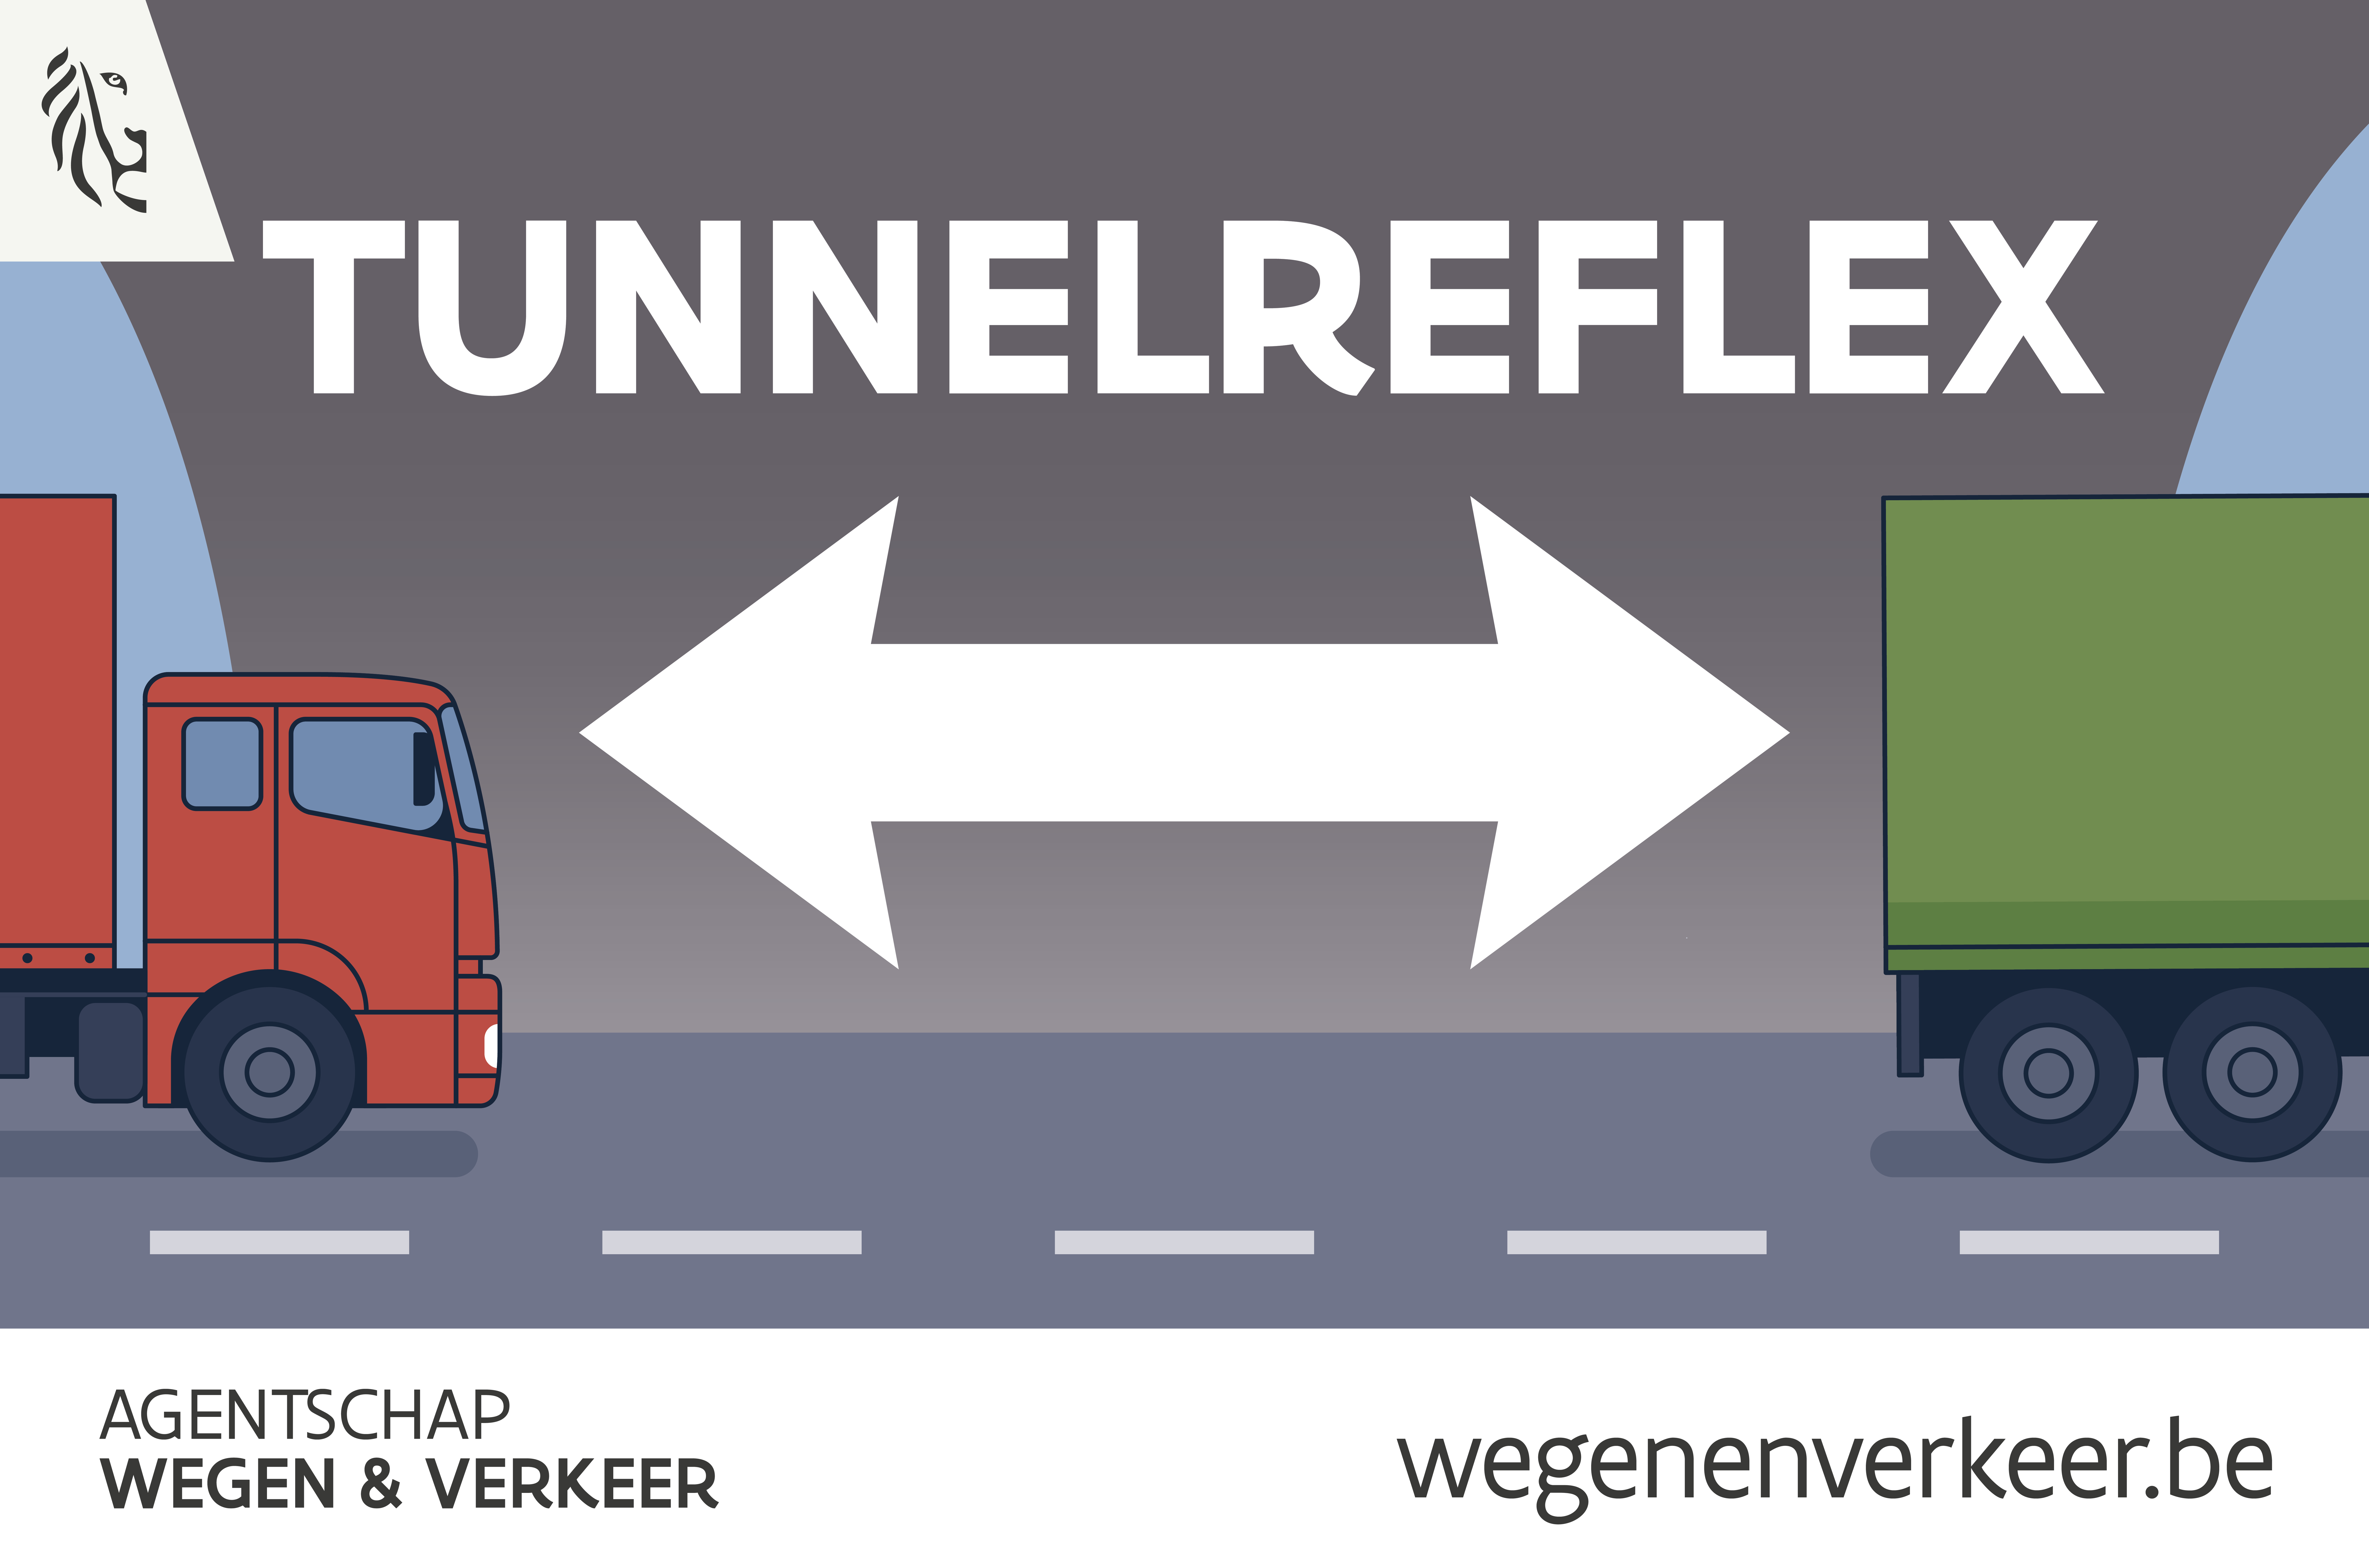 Tunnelreflex campagne 2020